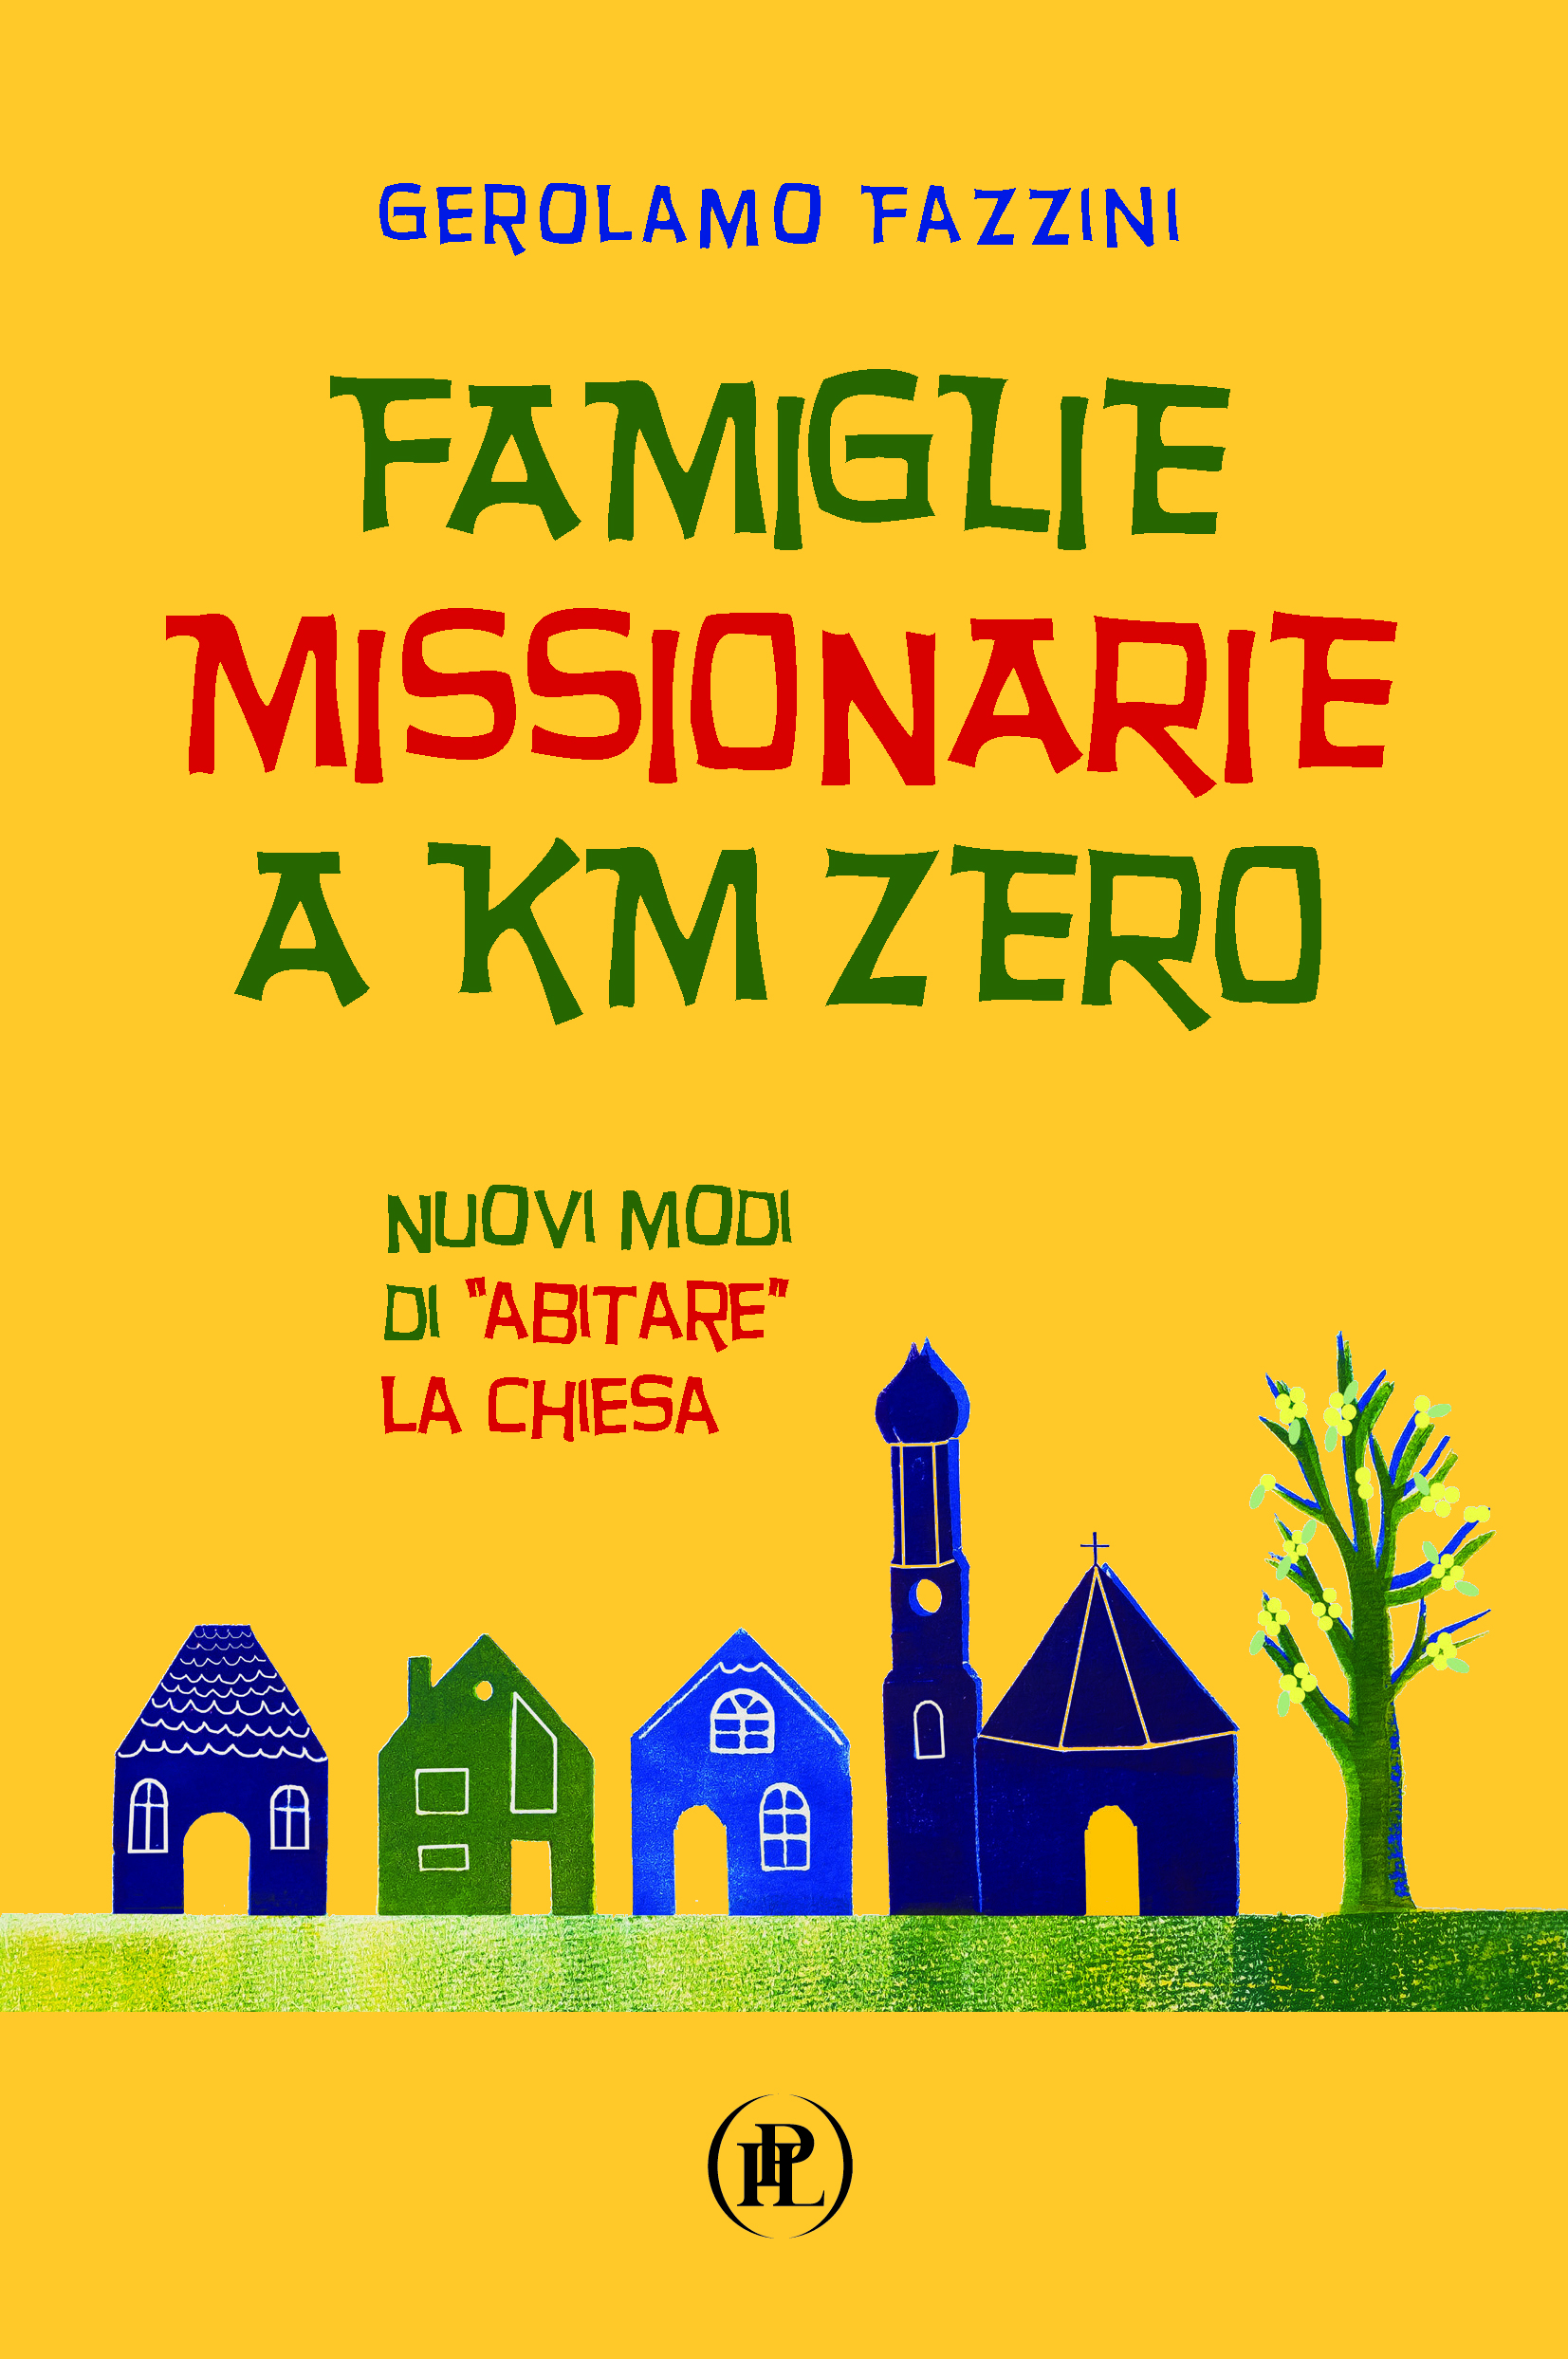 Famiglie_Km_Zero_cover